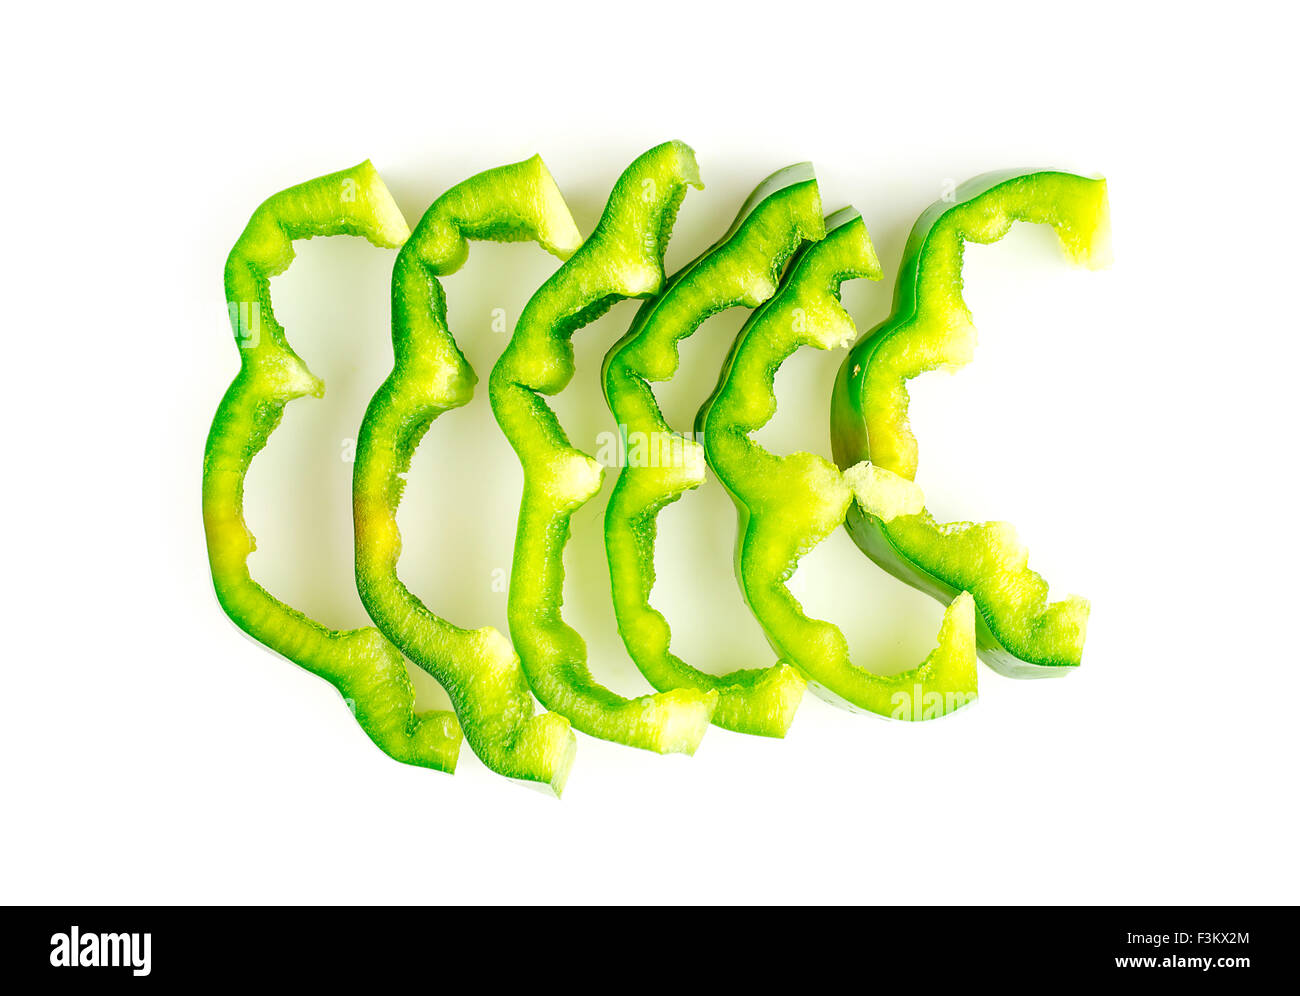 Aerial Makro lebendige grüne Paprika zerschnitten und in Scheiben geschnitten Stockfoto